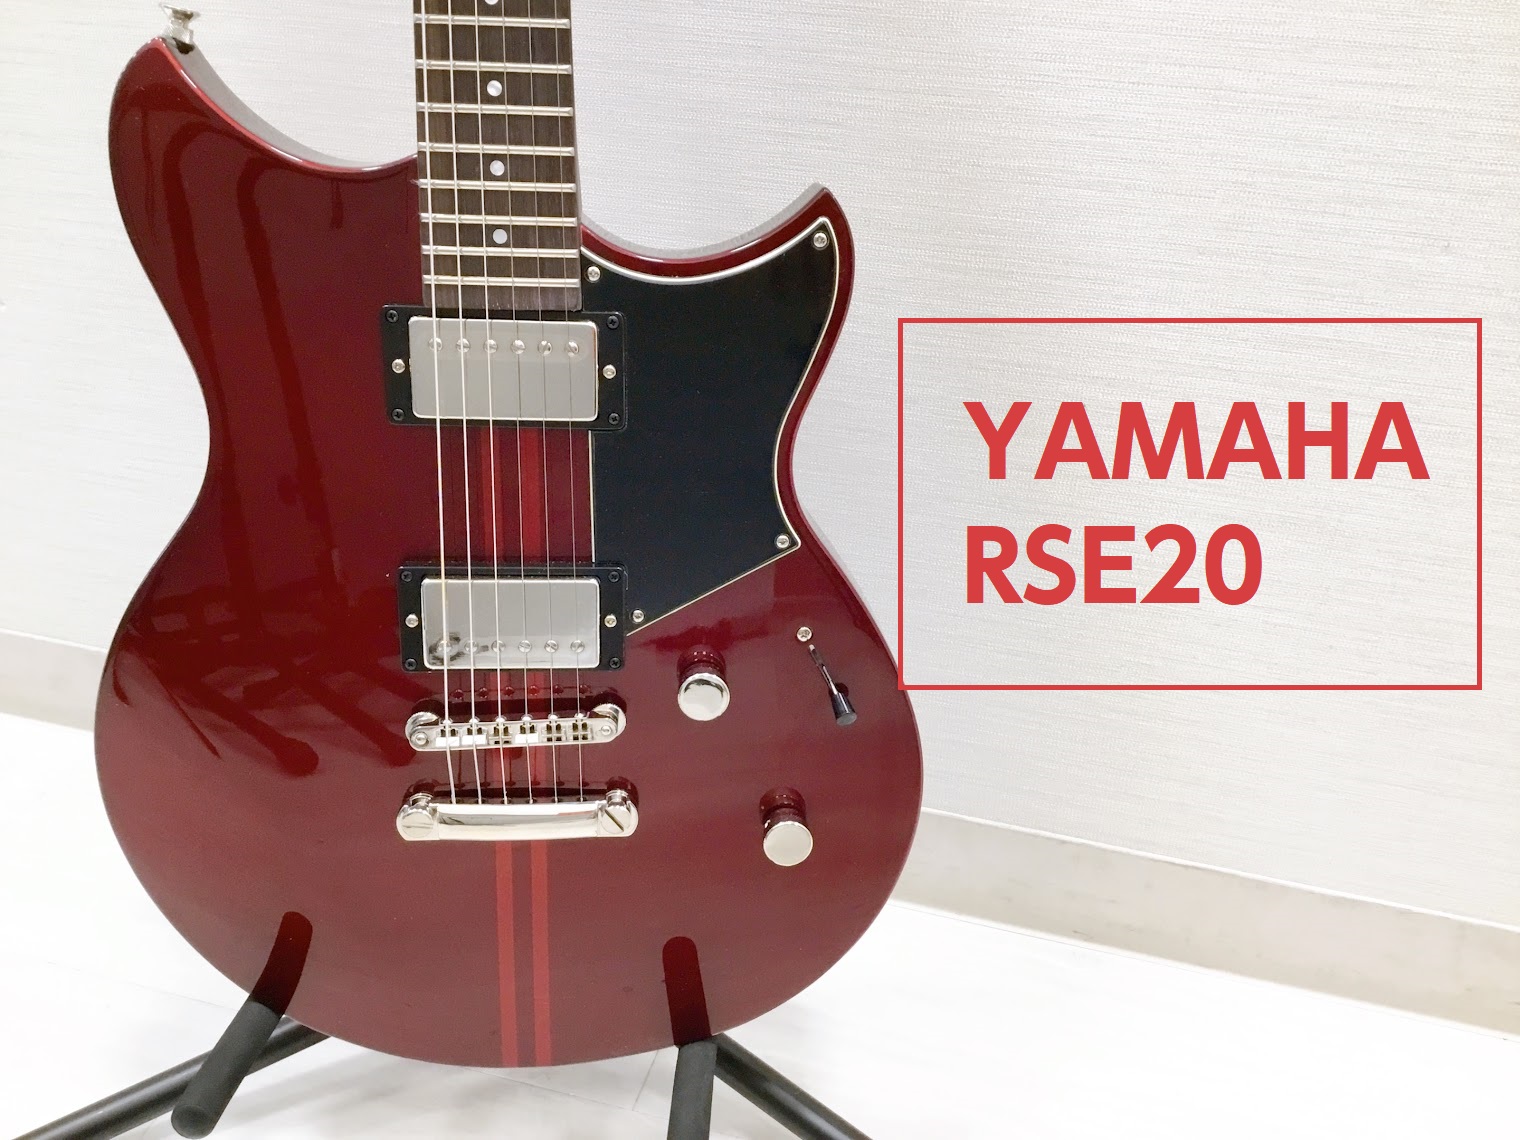 島村楽器大分店に、YAMAHA(ヤマハ)のエレキギター『RSE20』が入荷致しました！ 上位モデル同様「アコースティック・デザイン」をもとにチェンバー加工が施されたレブスター エレメントシリーズとなっております。RSE20は、カフェレーサーをイメージした5種類のカラーをラインアップ。チェンバー構造ボ […]